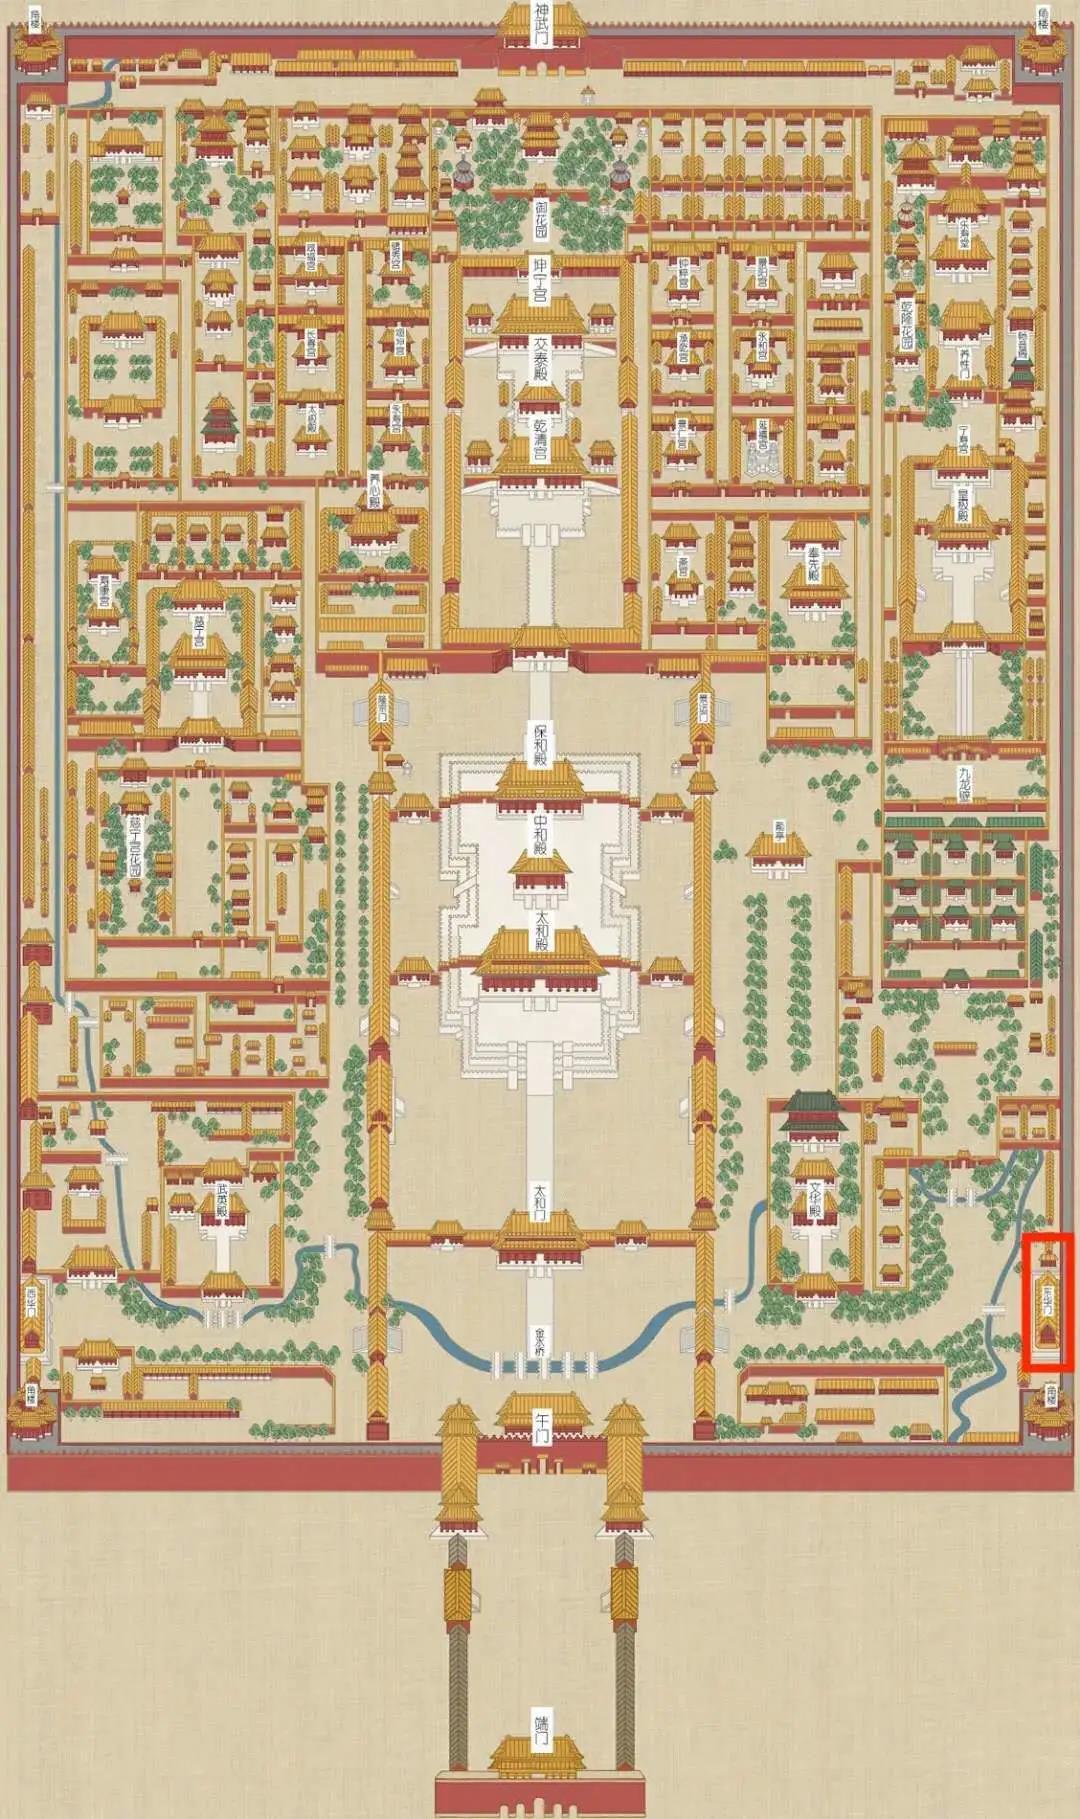 故宫平面图,红圈处为东华门 来源:故宫博物院官网